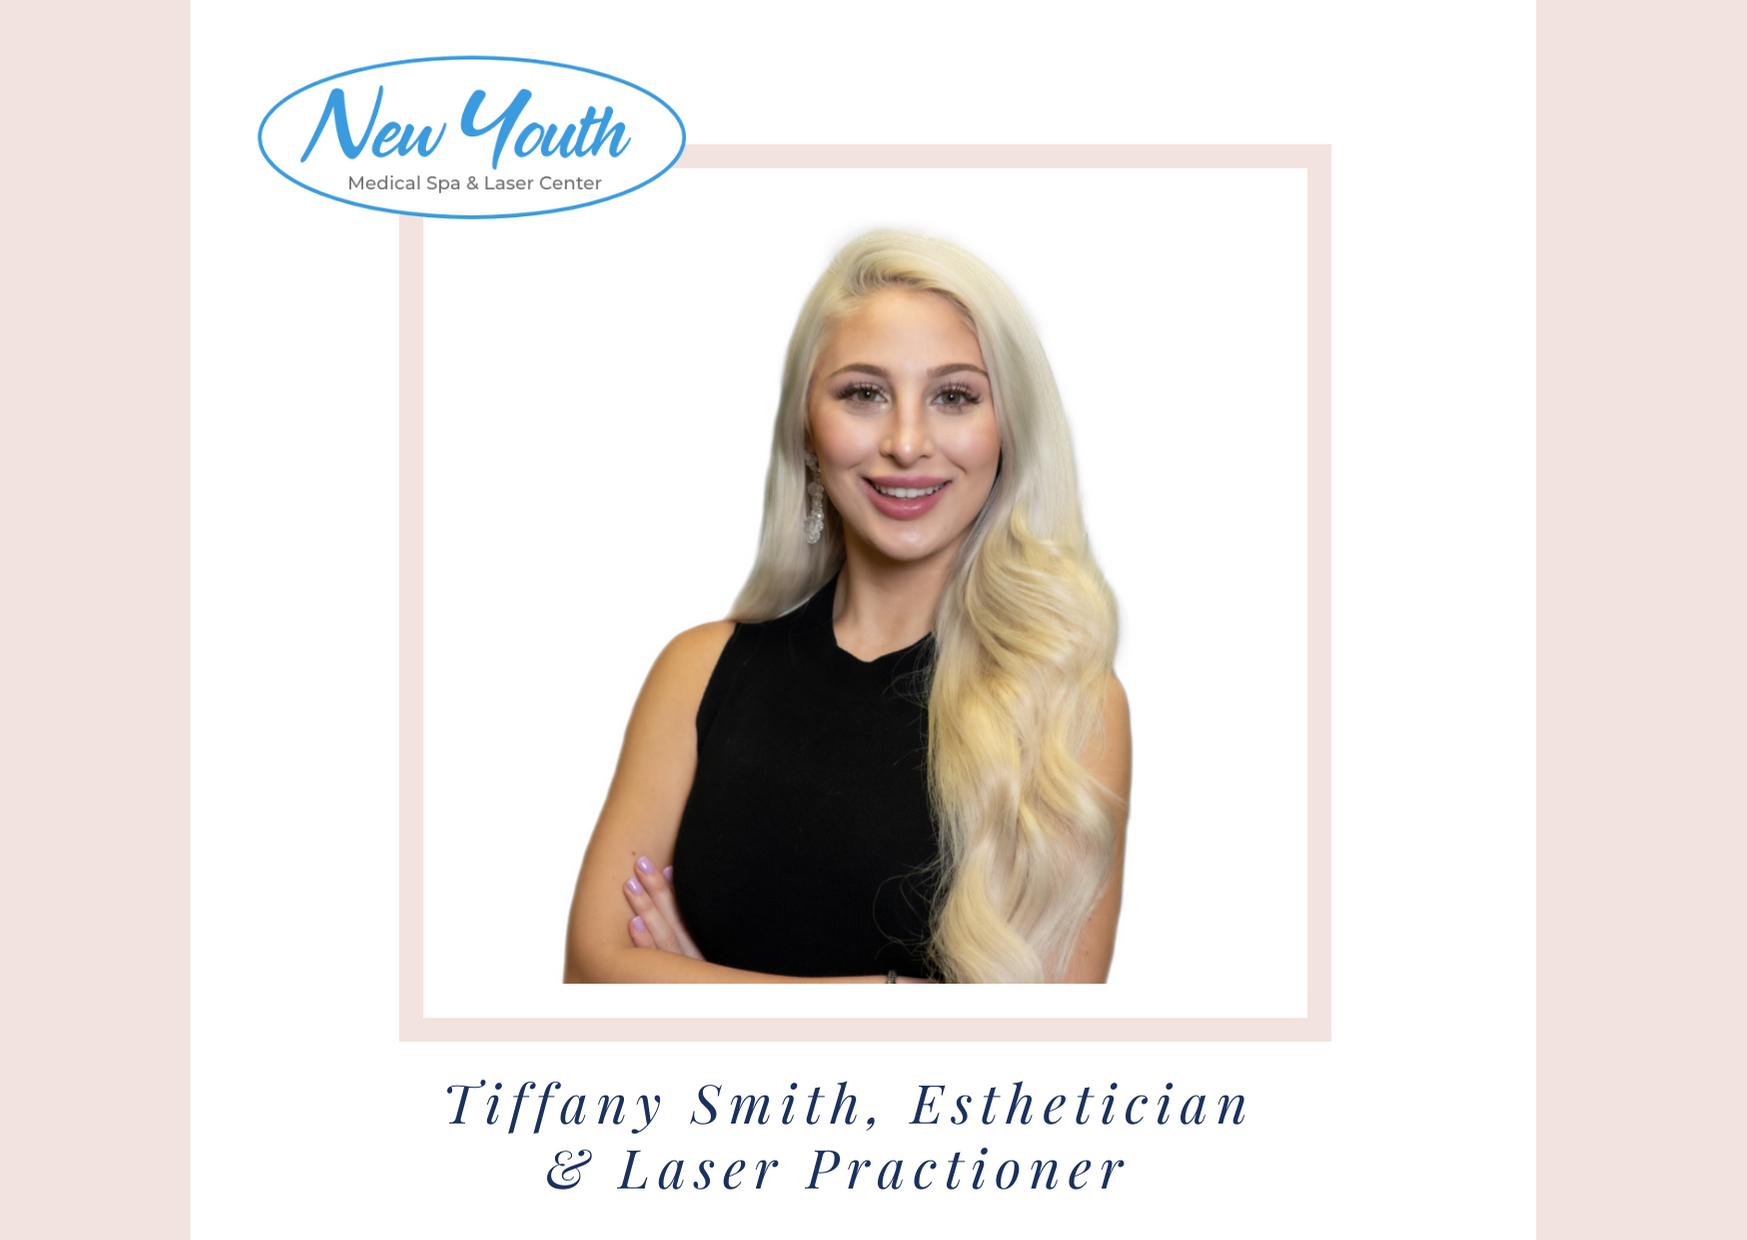 Tiffany Smith Esthetician at New Youth Medical Spa